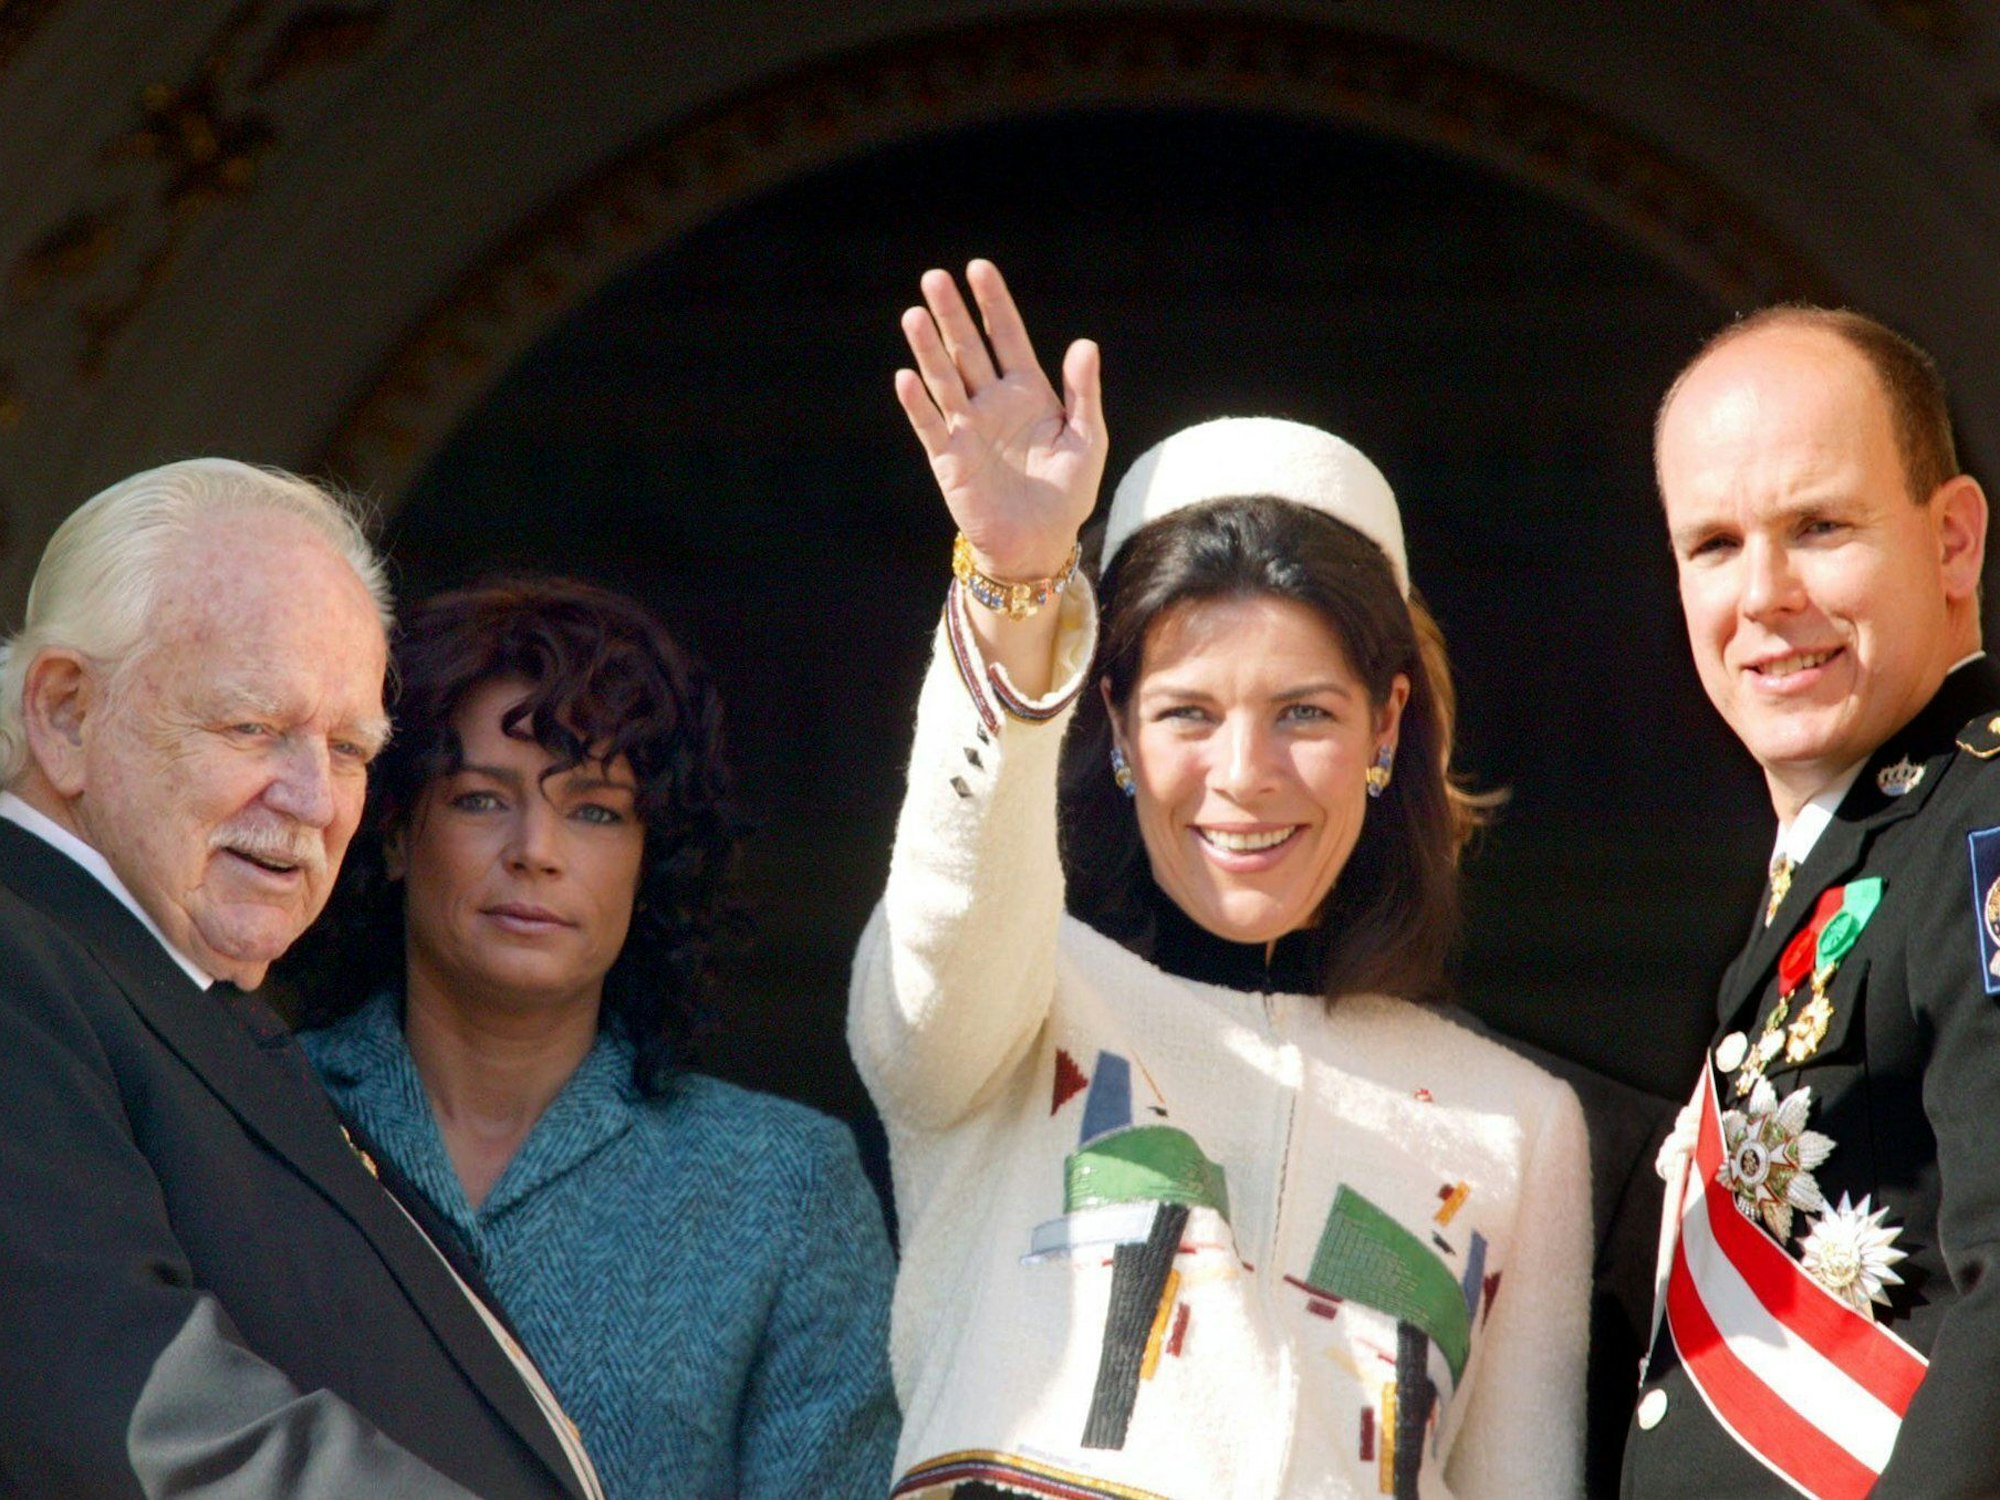 Fürst Rainier III. von Monaco zeigt sich mit seinen Kindern (l-r) Prinzessin Stephanie, Prinzessin Caroline und Erbprinz Albert am Nationalfeiertag am 19.11.2003 auf dem Balkon des Palastes in Monaco.